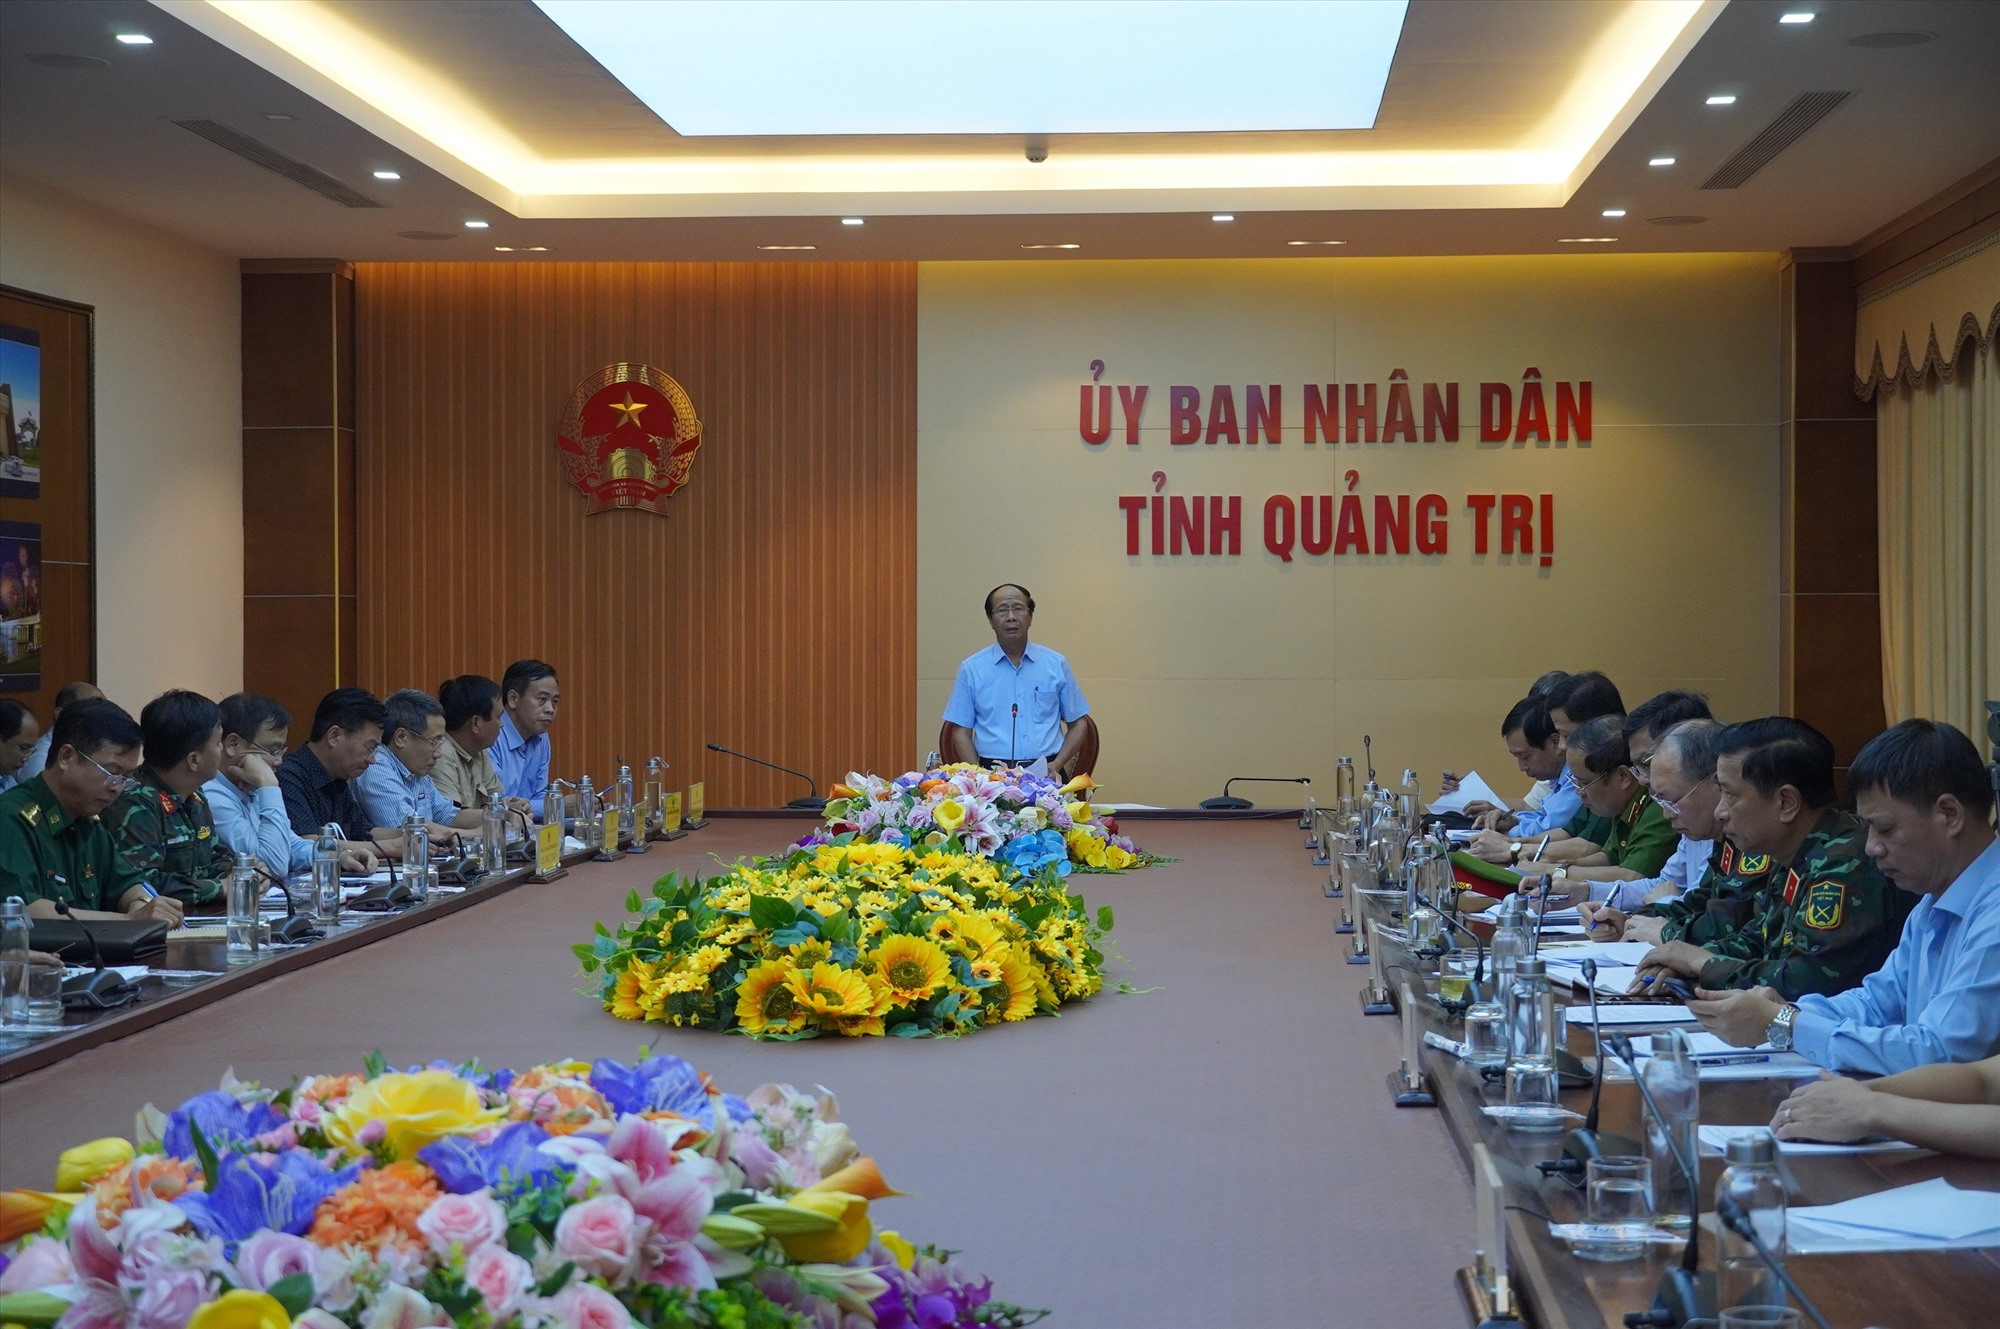 Phó Thủ tướng Chính phủ Lê Văn Thành chỉ đạo các tỉnh, thành phố tăng cường các giải pháp ứng phó với bão số 4 - Ảnh: T.T